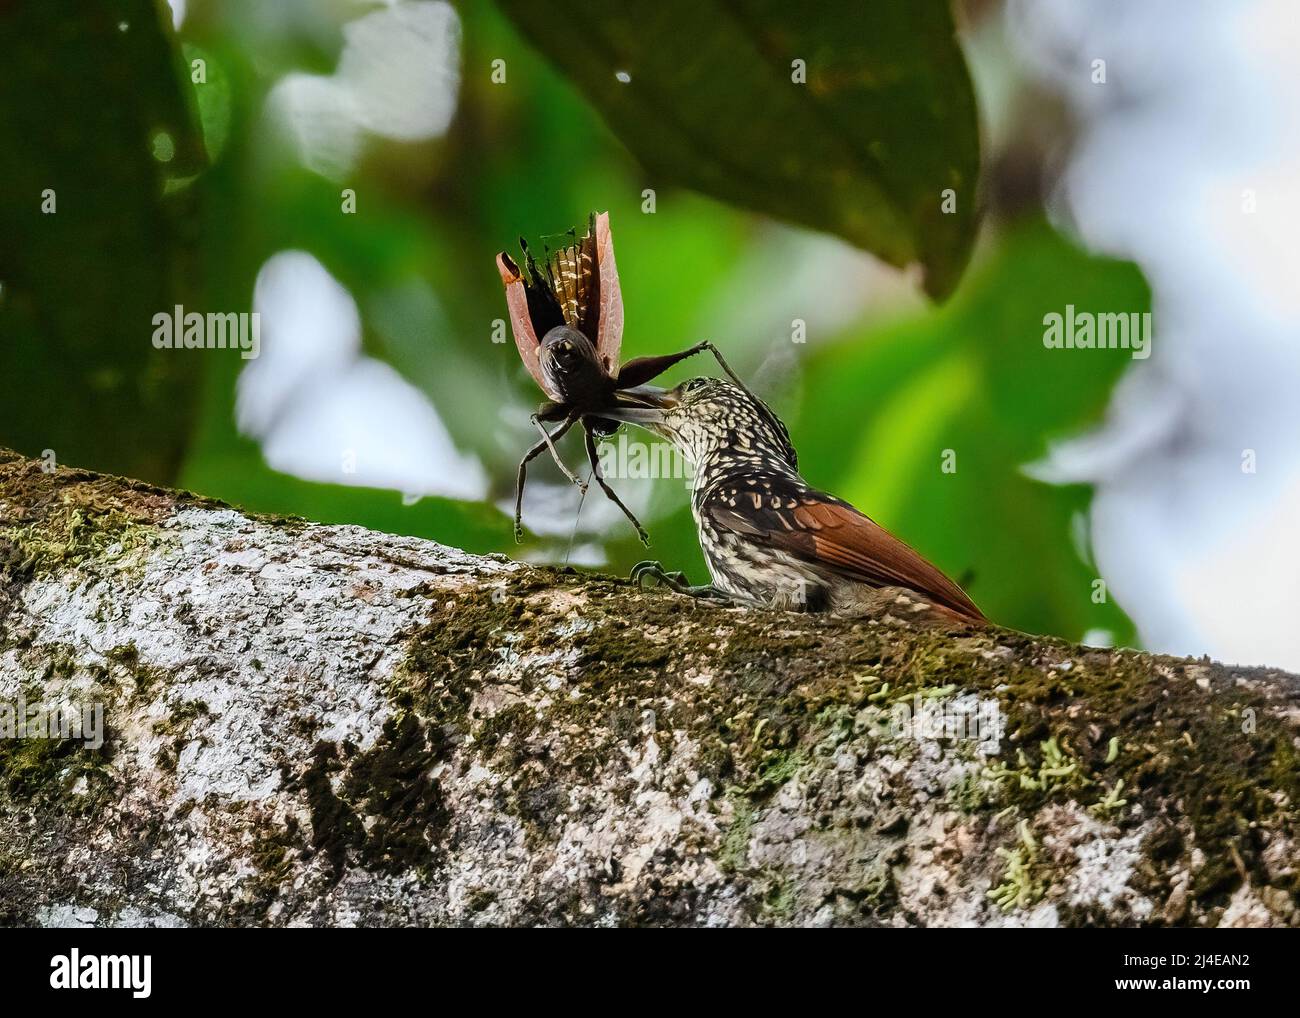 Un super-réducteur à rayures noires (Xiphorhynchus lachrymosus) luttant contre un gros insecte. Colombie, Amérique du Sud. Banque D'Images